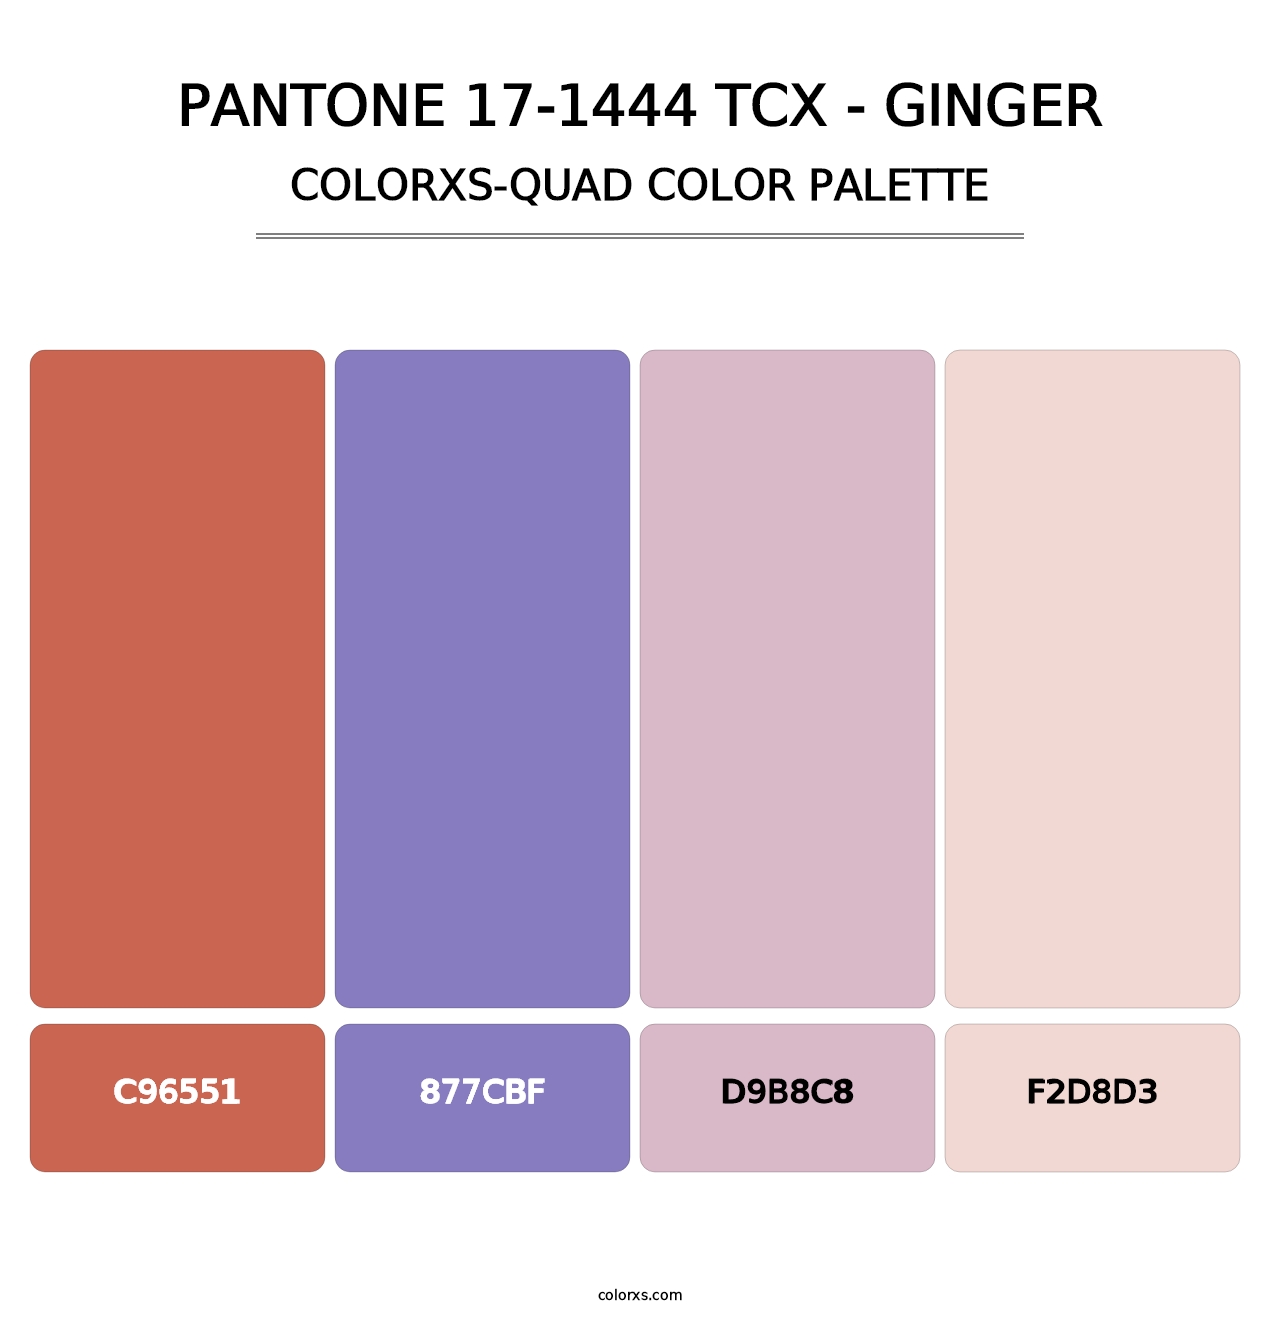 PANTONE 17-1444 TCX - Ginger - Colorxs Quad Palette